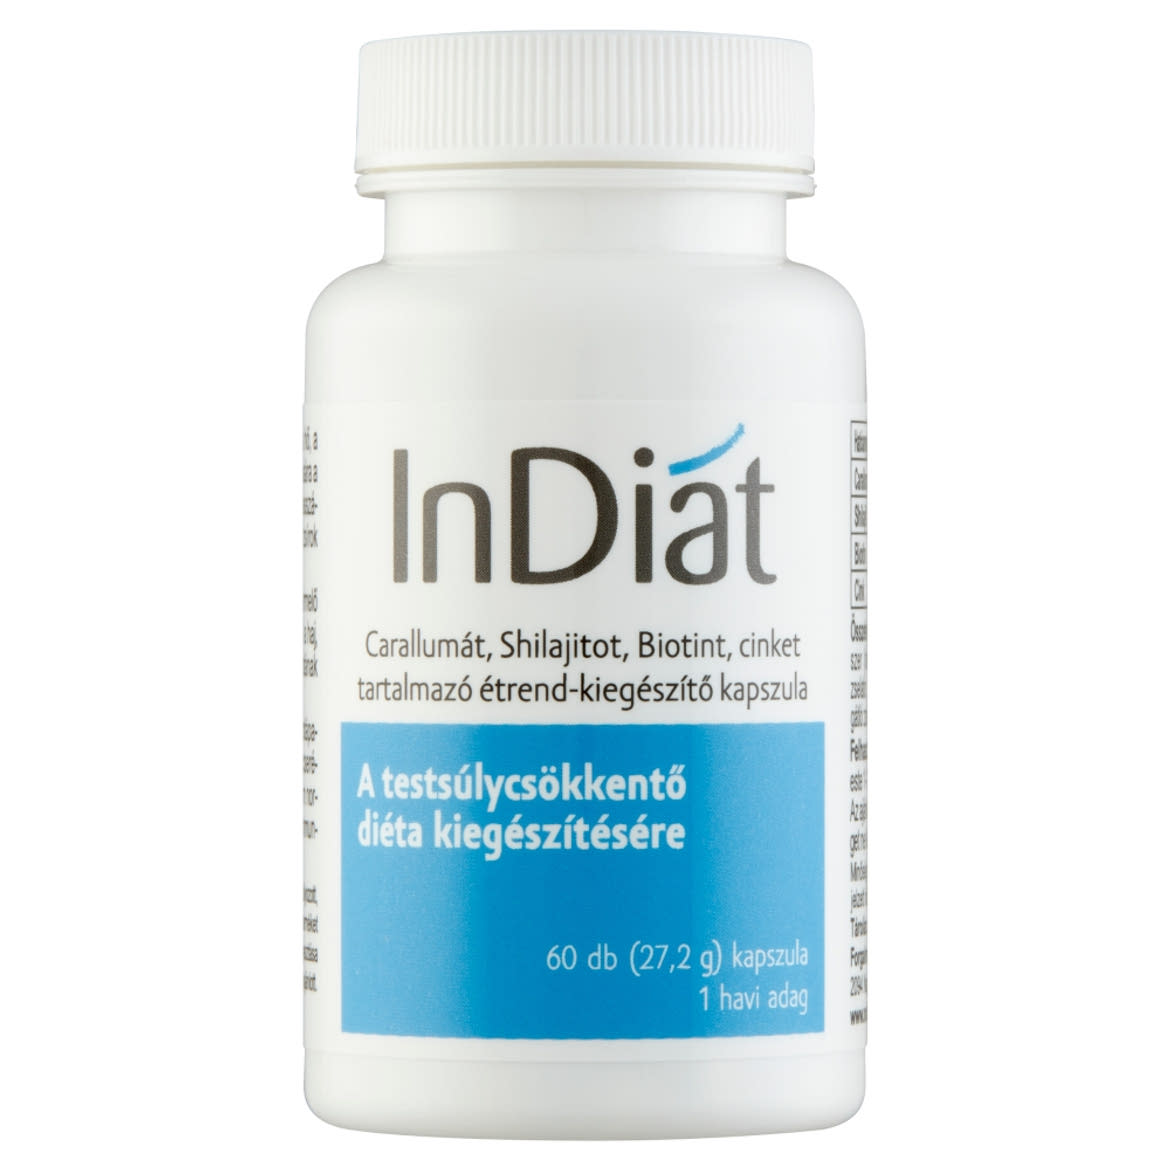 InDiat caralummát, shilajitot, biotint, cinket tartalmazó étrend-kiegészítő kapszula